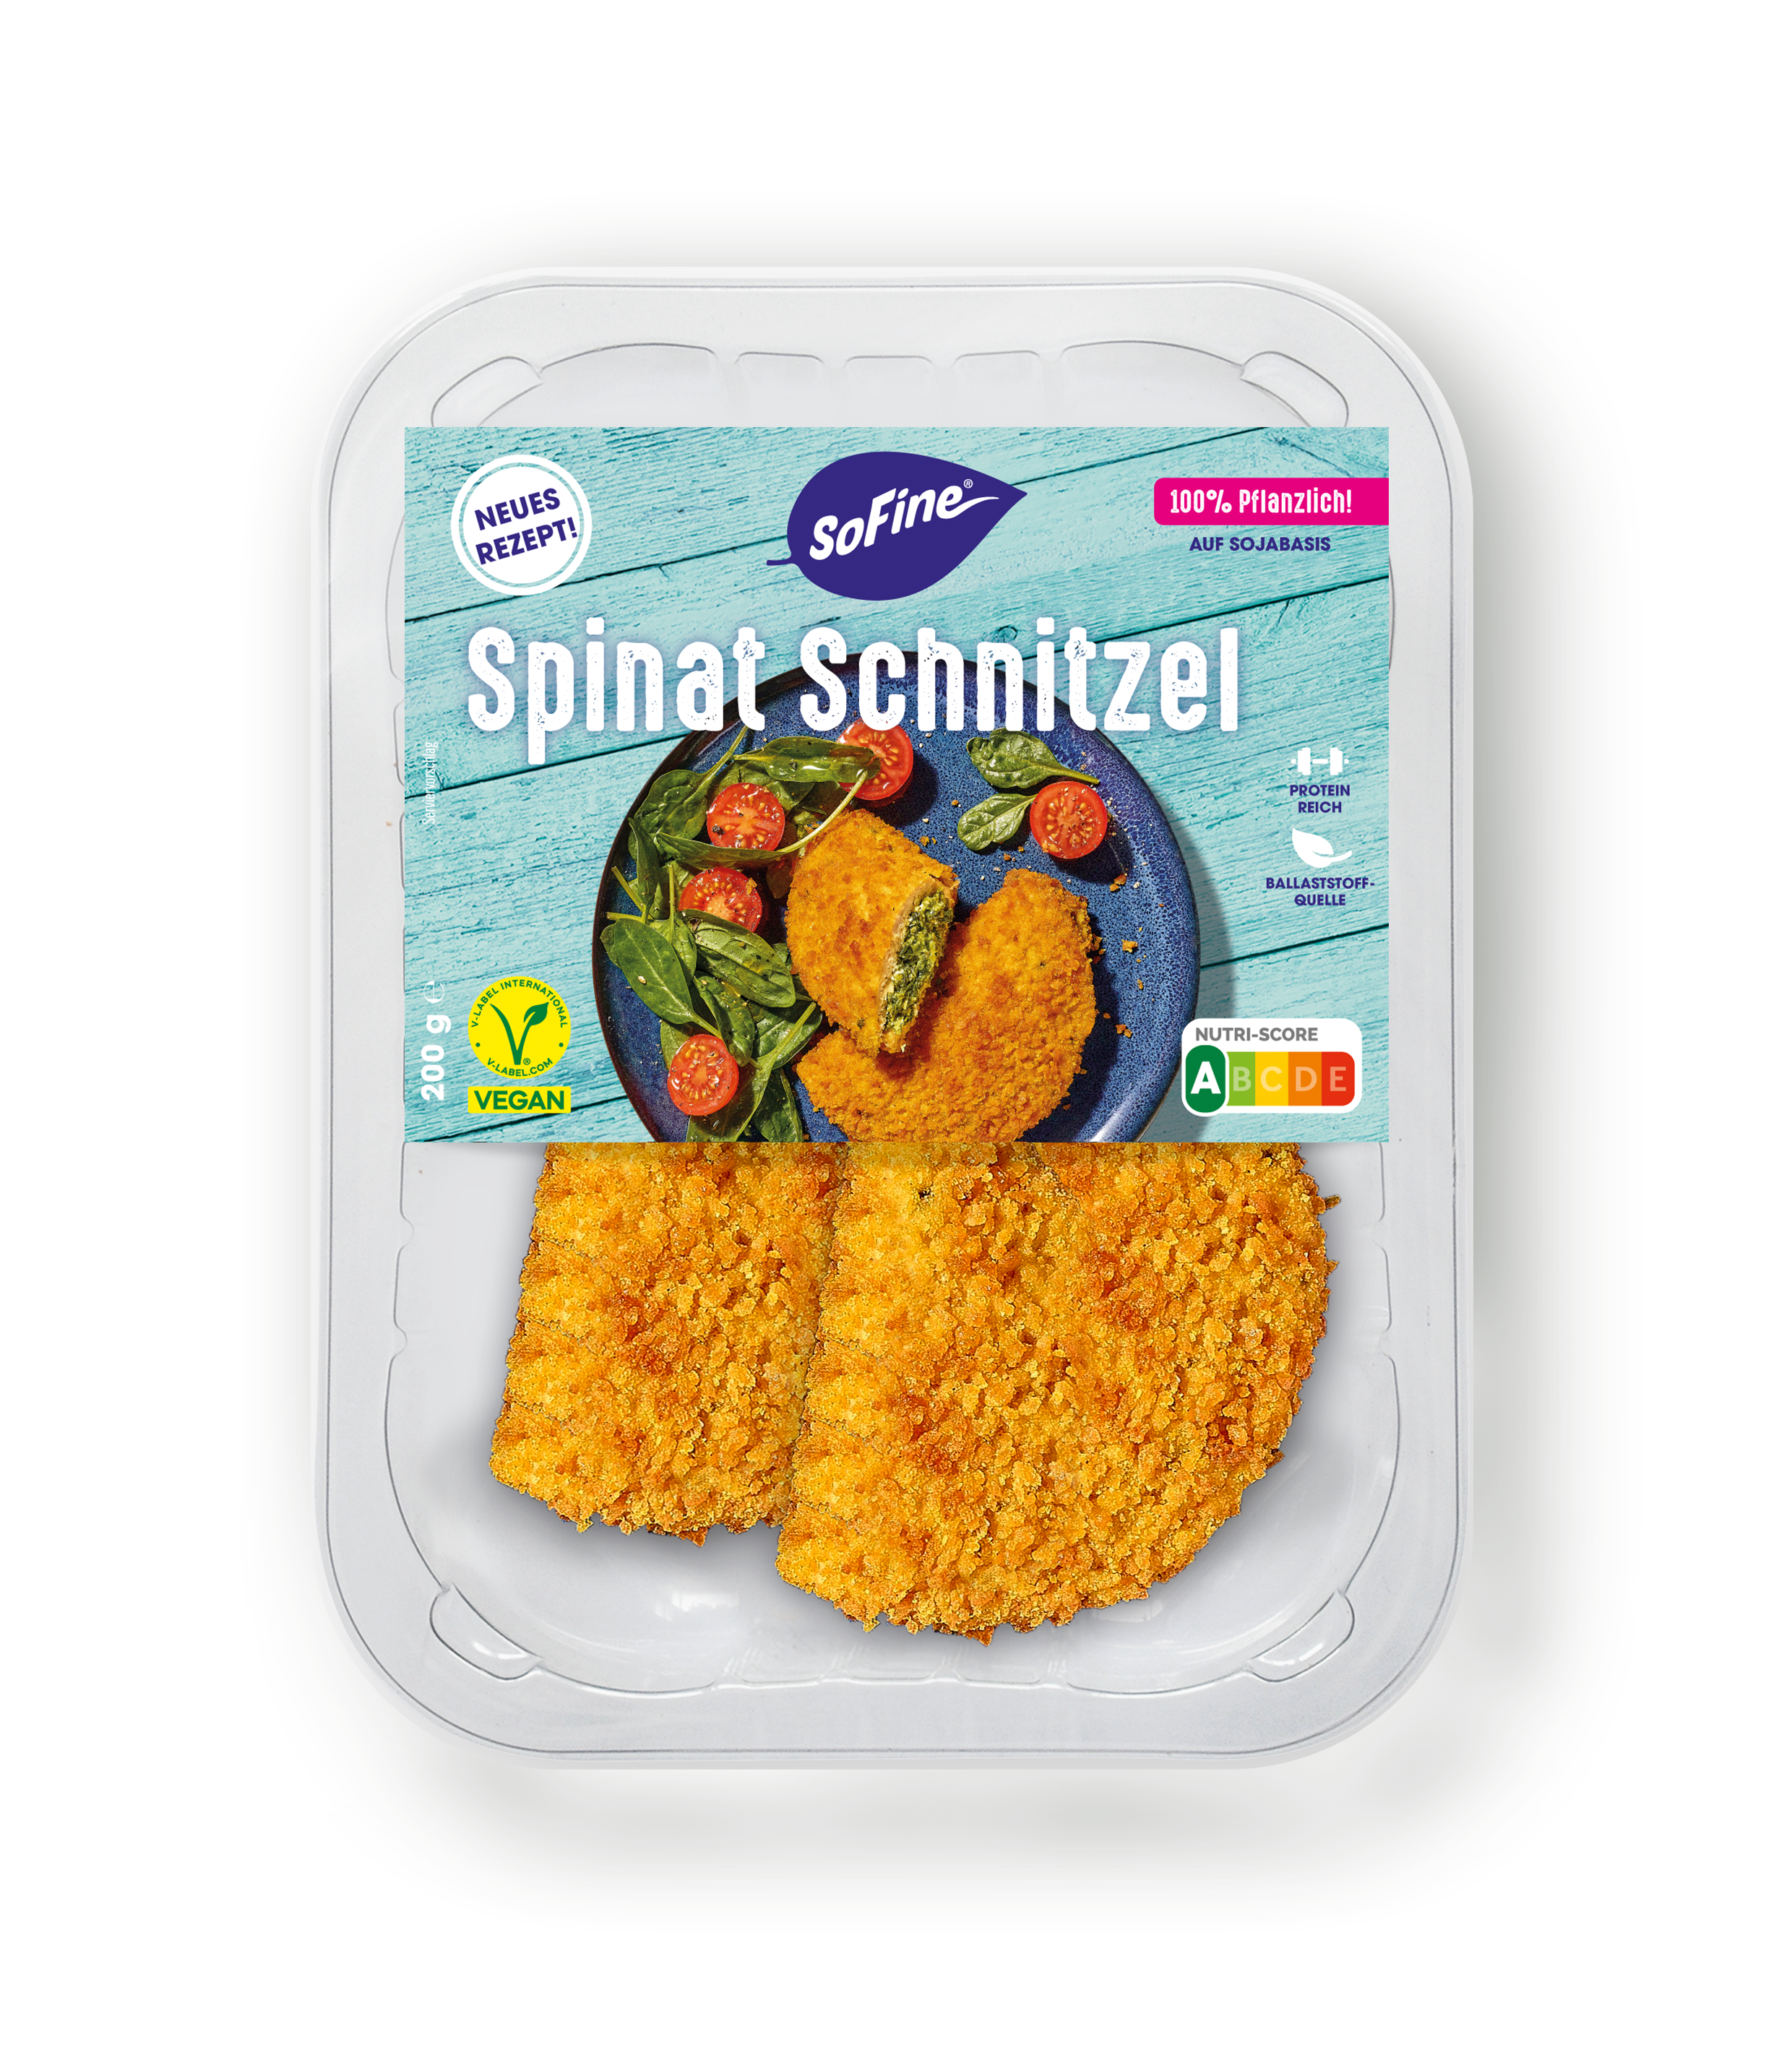 Spinat Schnitzel